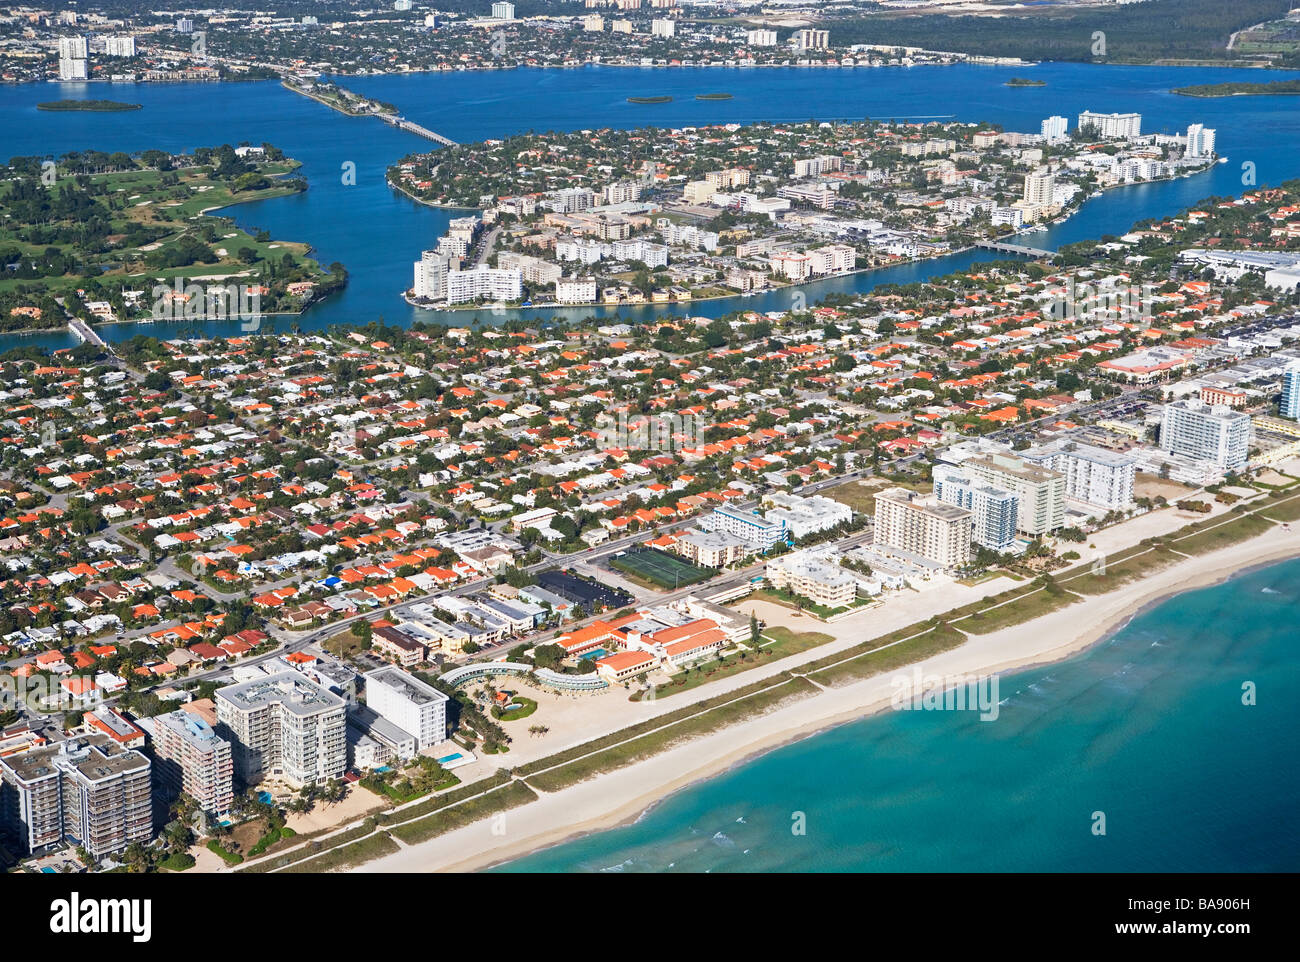 Vista aérea de la ciudad costera Foto de stock